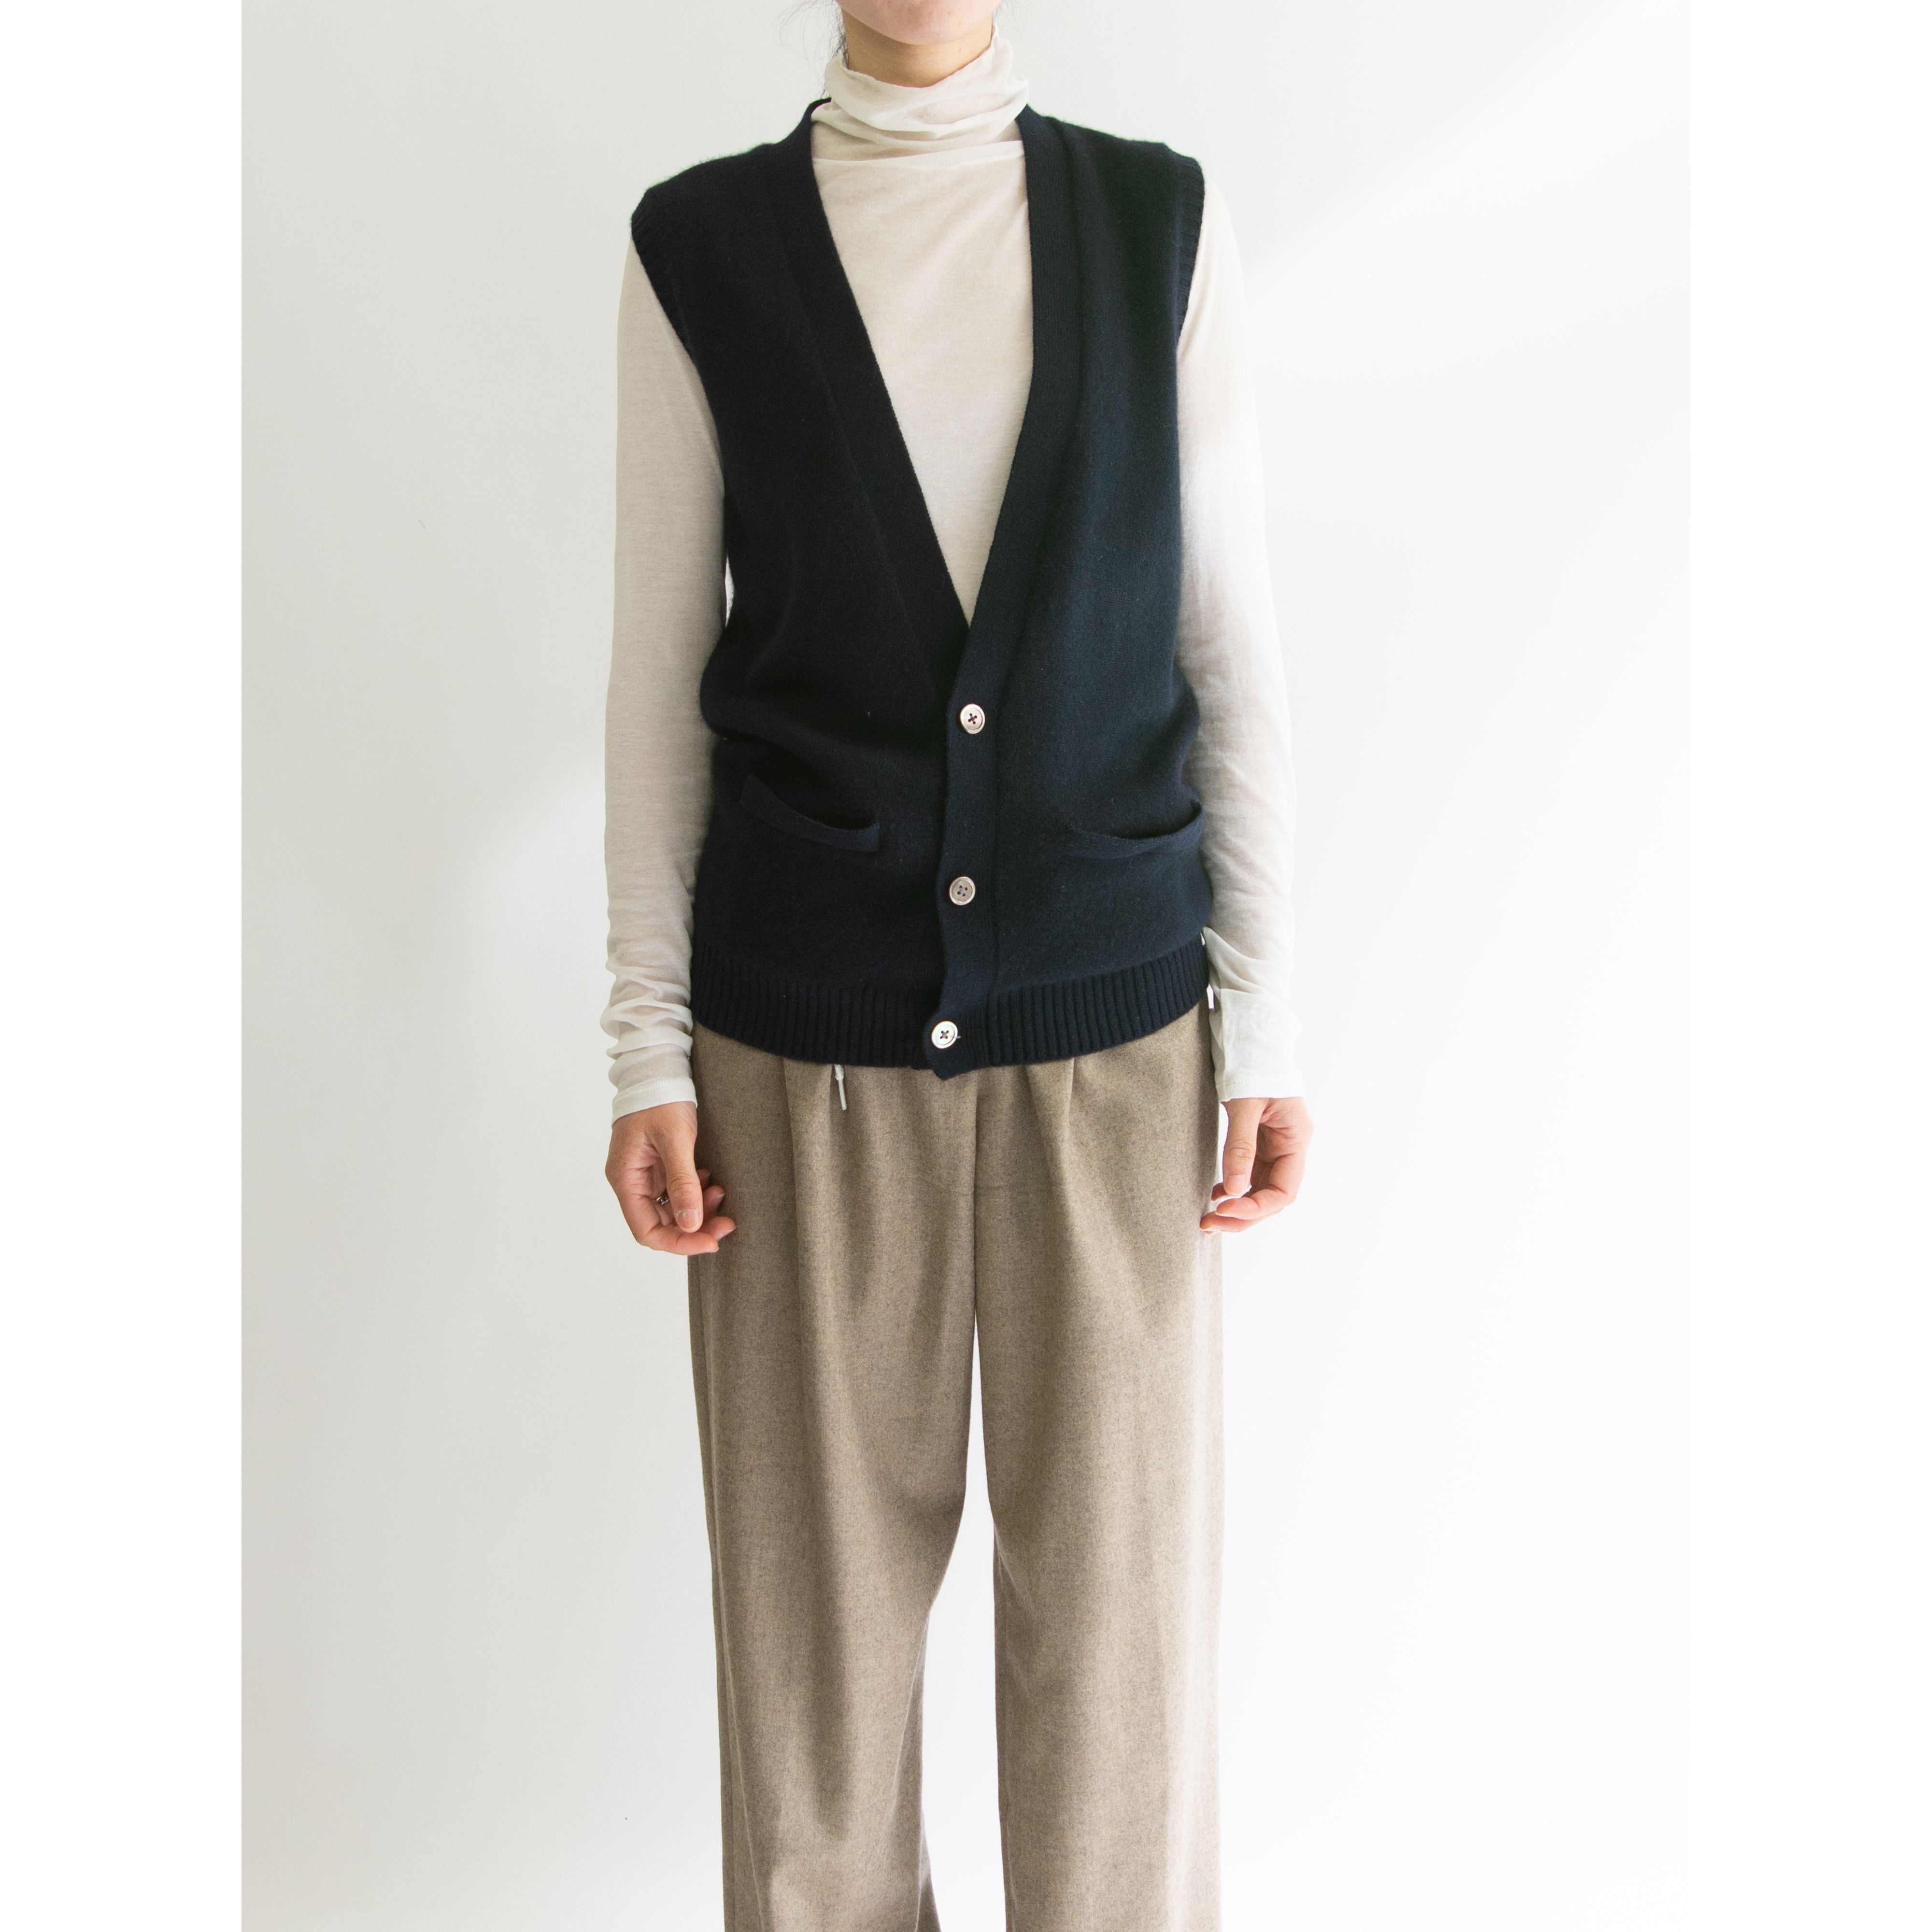 RALPH LAUREN】Made in Hong Kong 80's 100% Cashmere Knit Vest